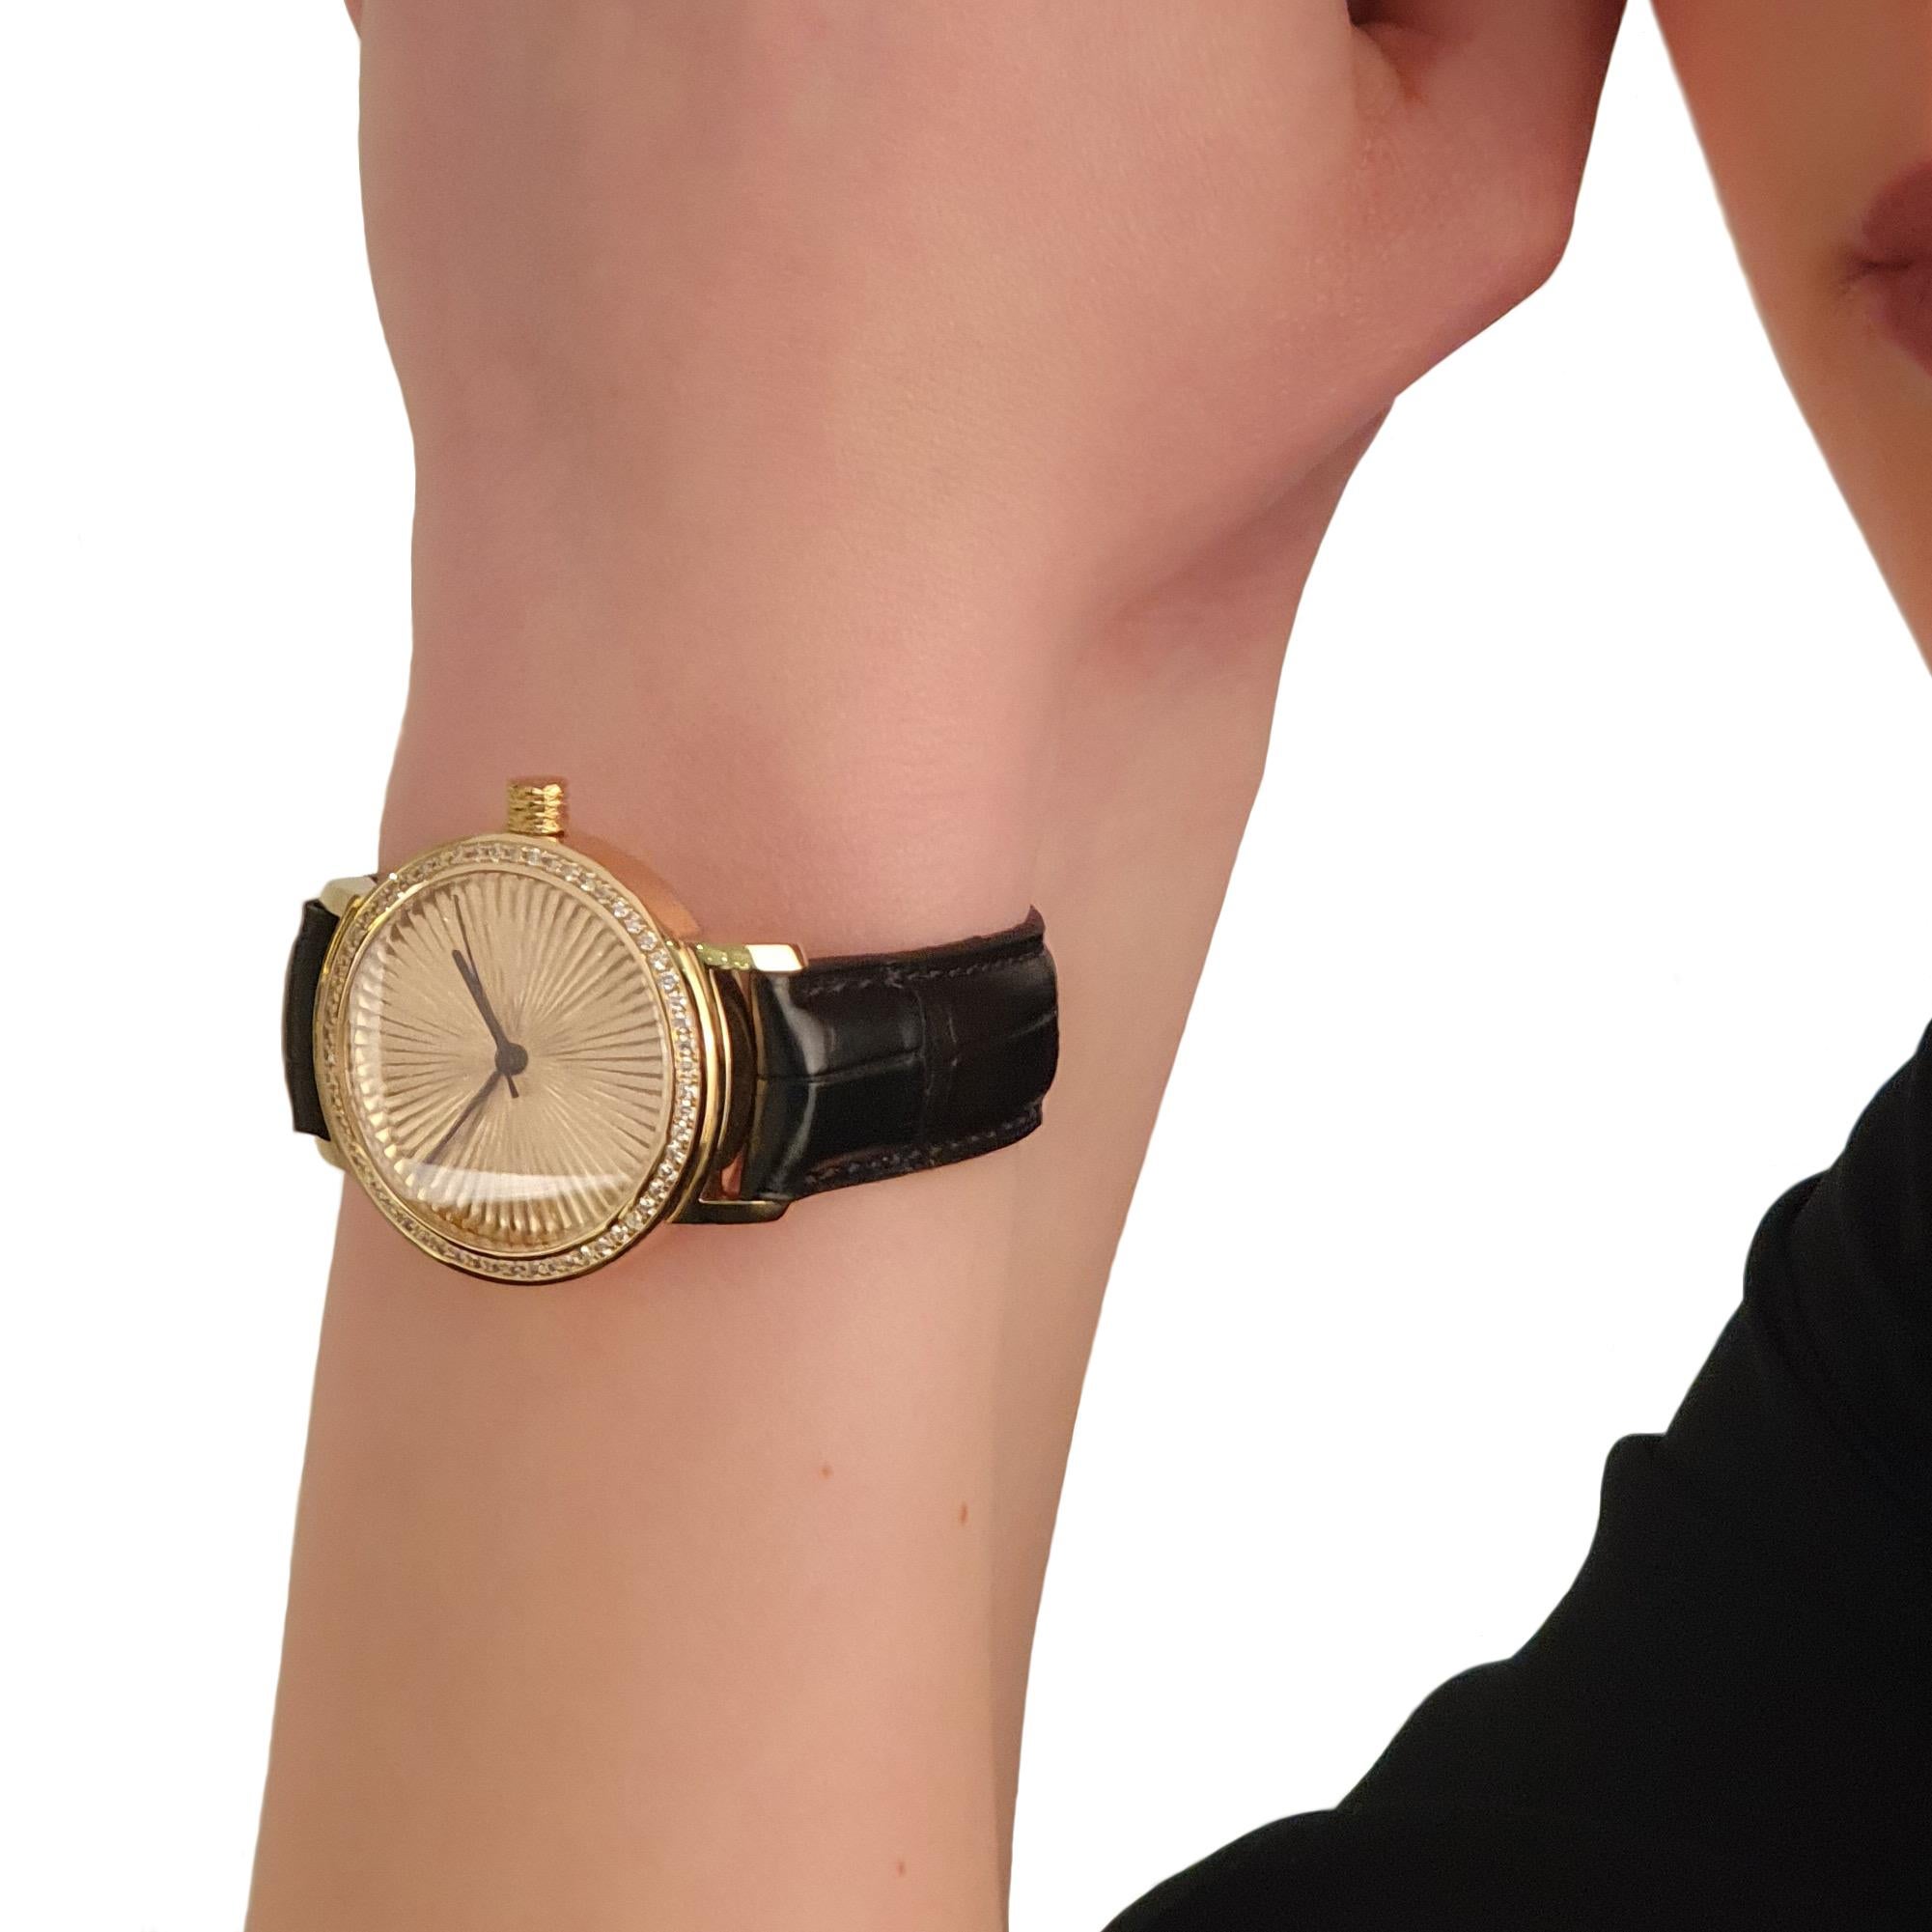 Handgefertigte Uhr mit einem automatischen Uhrwerk, ETA 2892-A2. Wasser- und staubdicht für 5 ATM. Die Lünette enthält 60 lupenreine Diamanten im Brillantschliff (E/LC). Das von Hand gefeilte Zifferblatt sticht am meisten hervor, denn es ist für